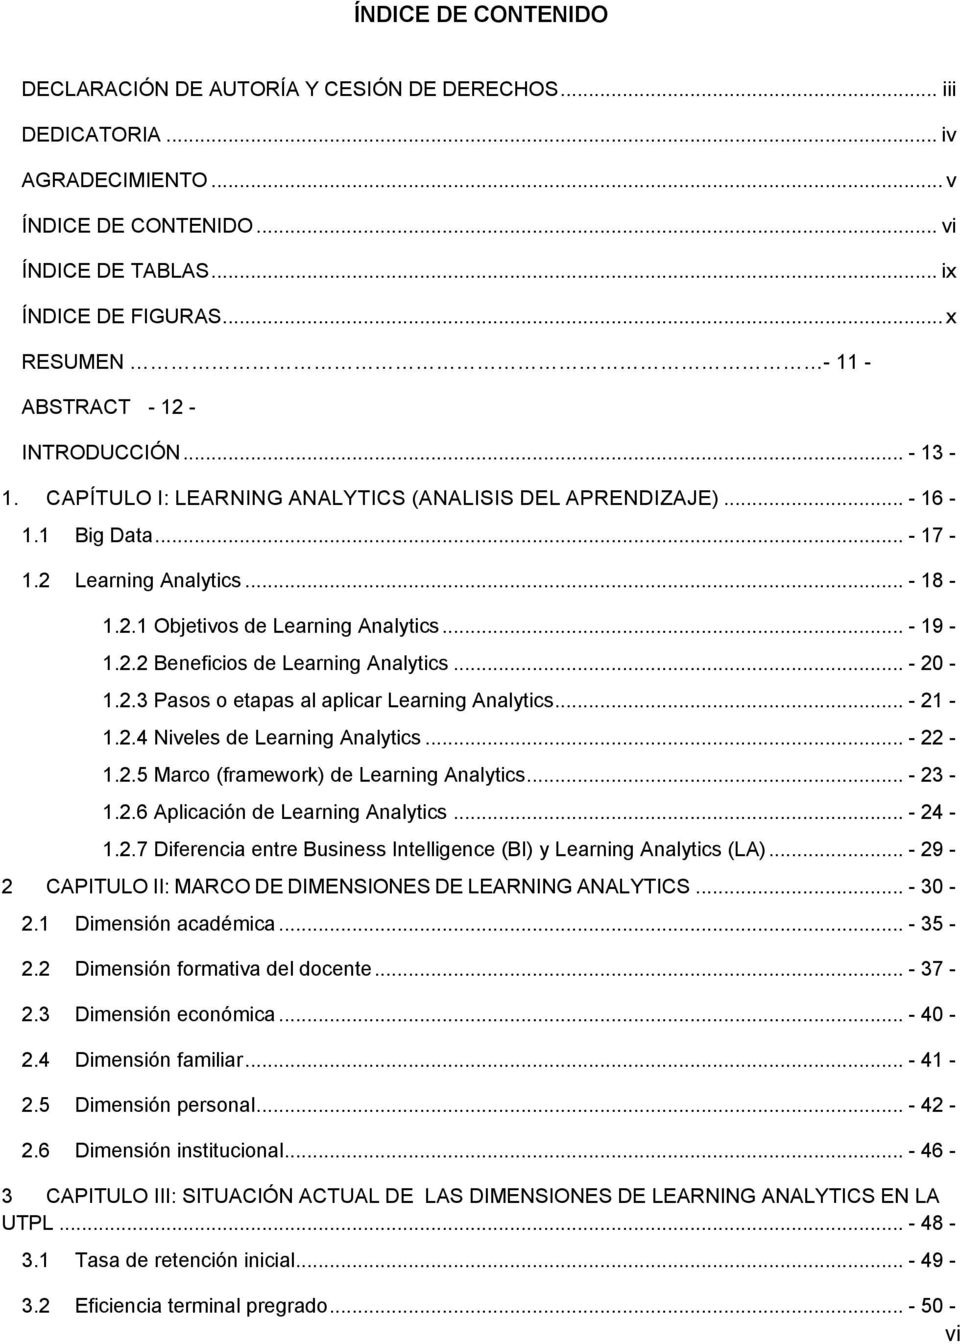 .. - 19-1.2.2 Beneficios de Learning Analytics... - 20-1.2.3 Pasos o etapas al aplicar Learning Analytics... - 21-1.2.4 Niveles de Learning Analytics... - 22-1.2.5 Marco (framework) de Learning Analytics.